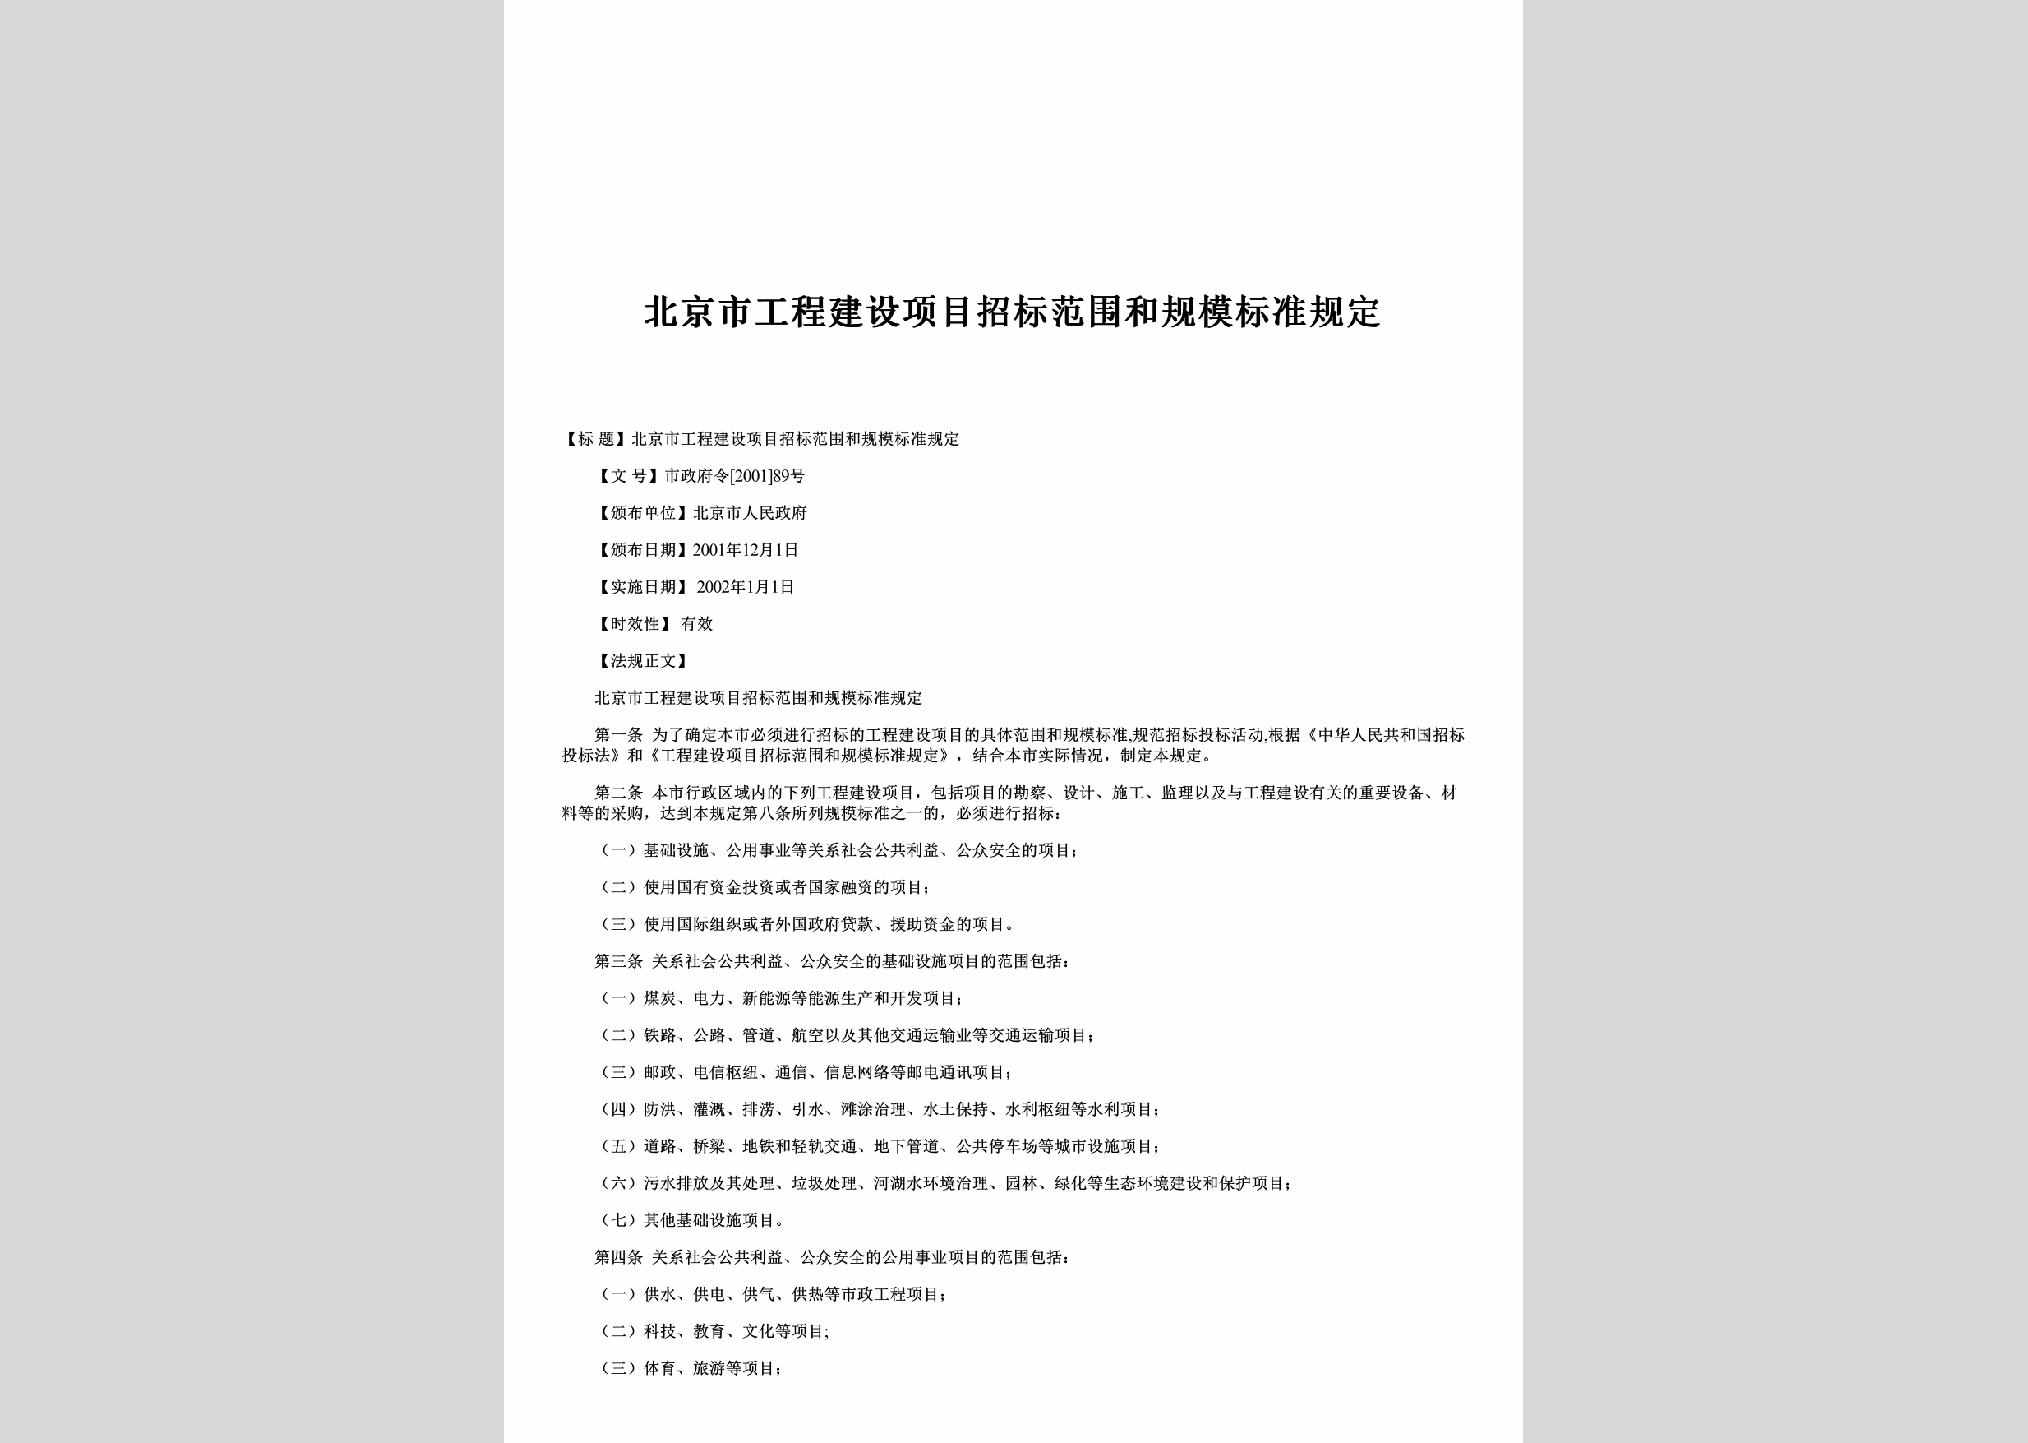 市政府令[2001]89号：北京市工程建设项目招标范围和规模标准规定